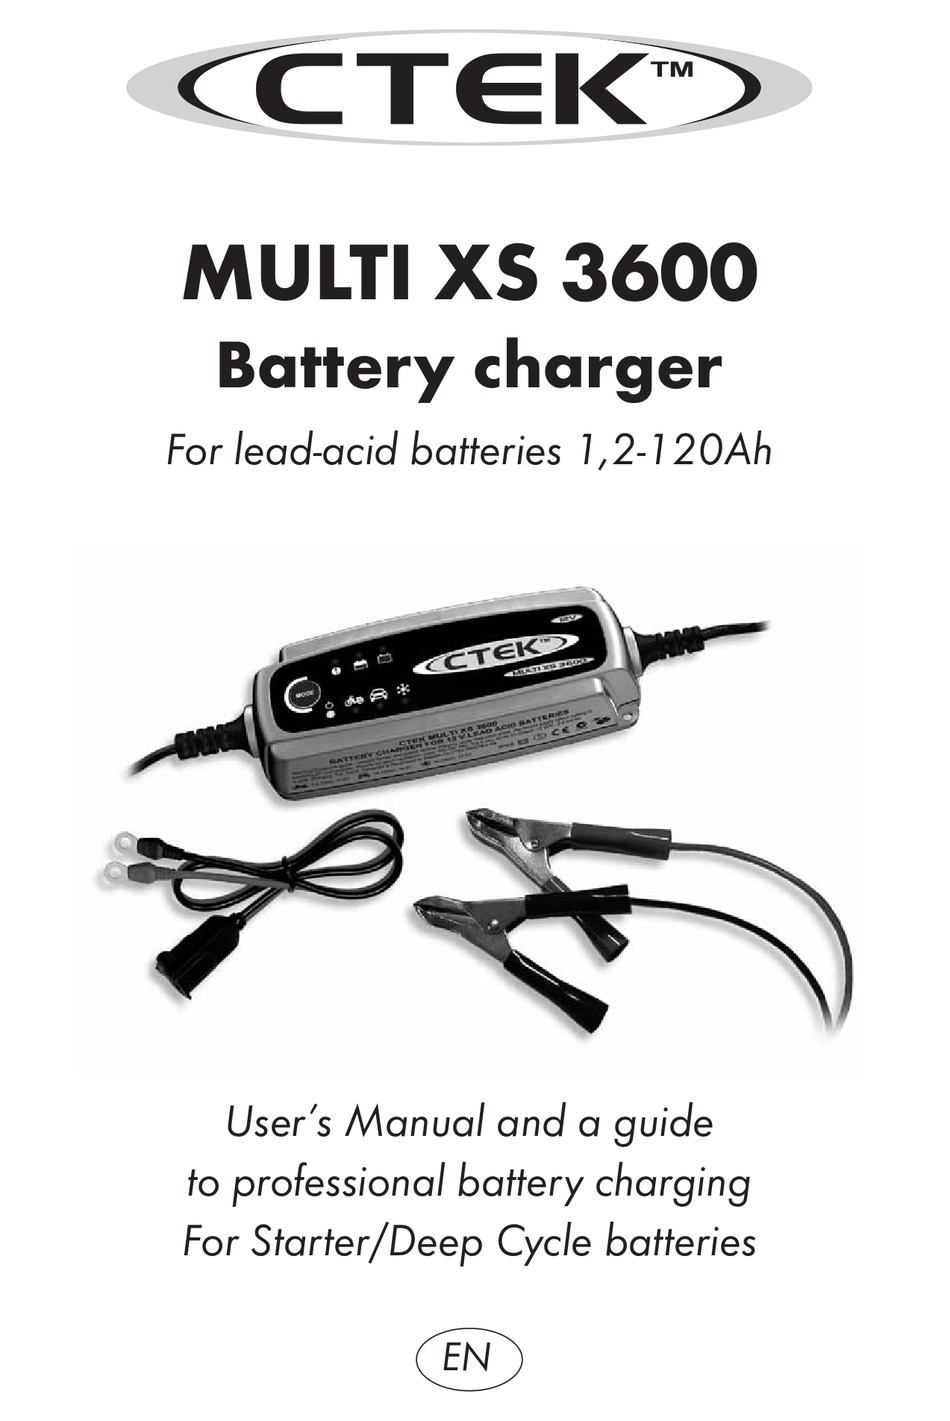 CTEK MULTI XS 3600 USER MANUAL Pdf Download | ManualsLib